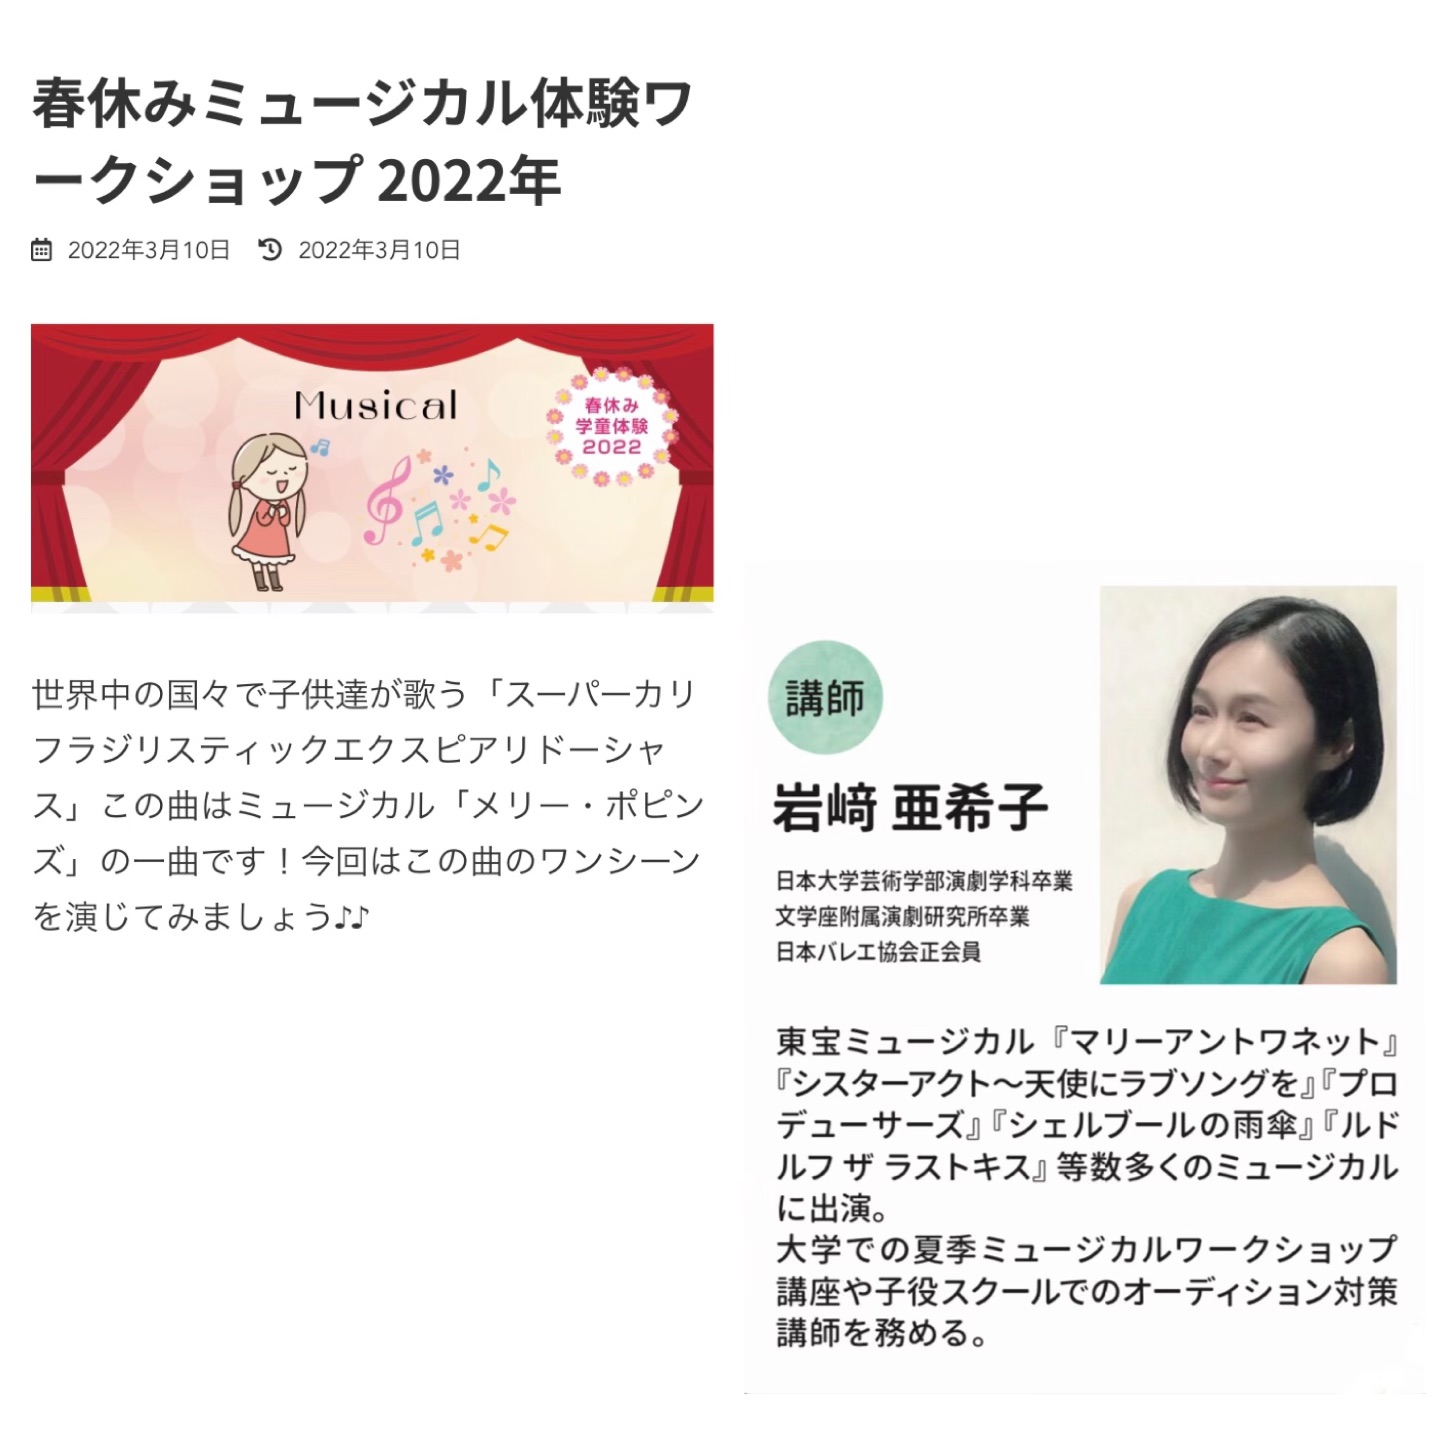 春休みミュージカル体験ワークショップ開催のお知らせ Akiko Iwasaki Official Website